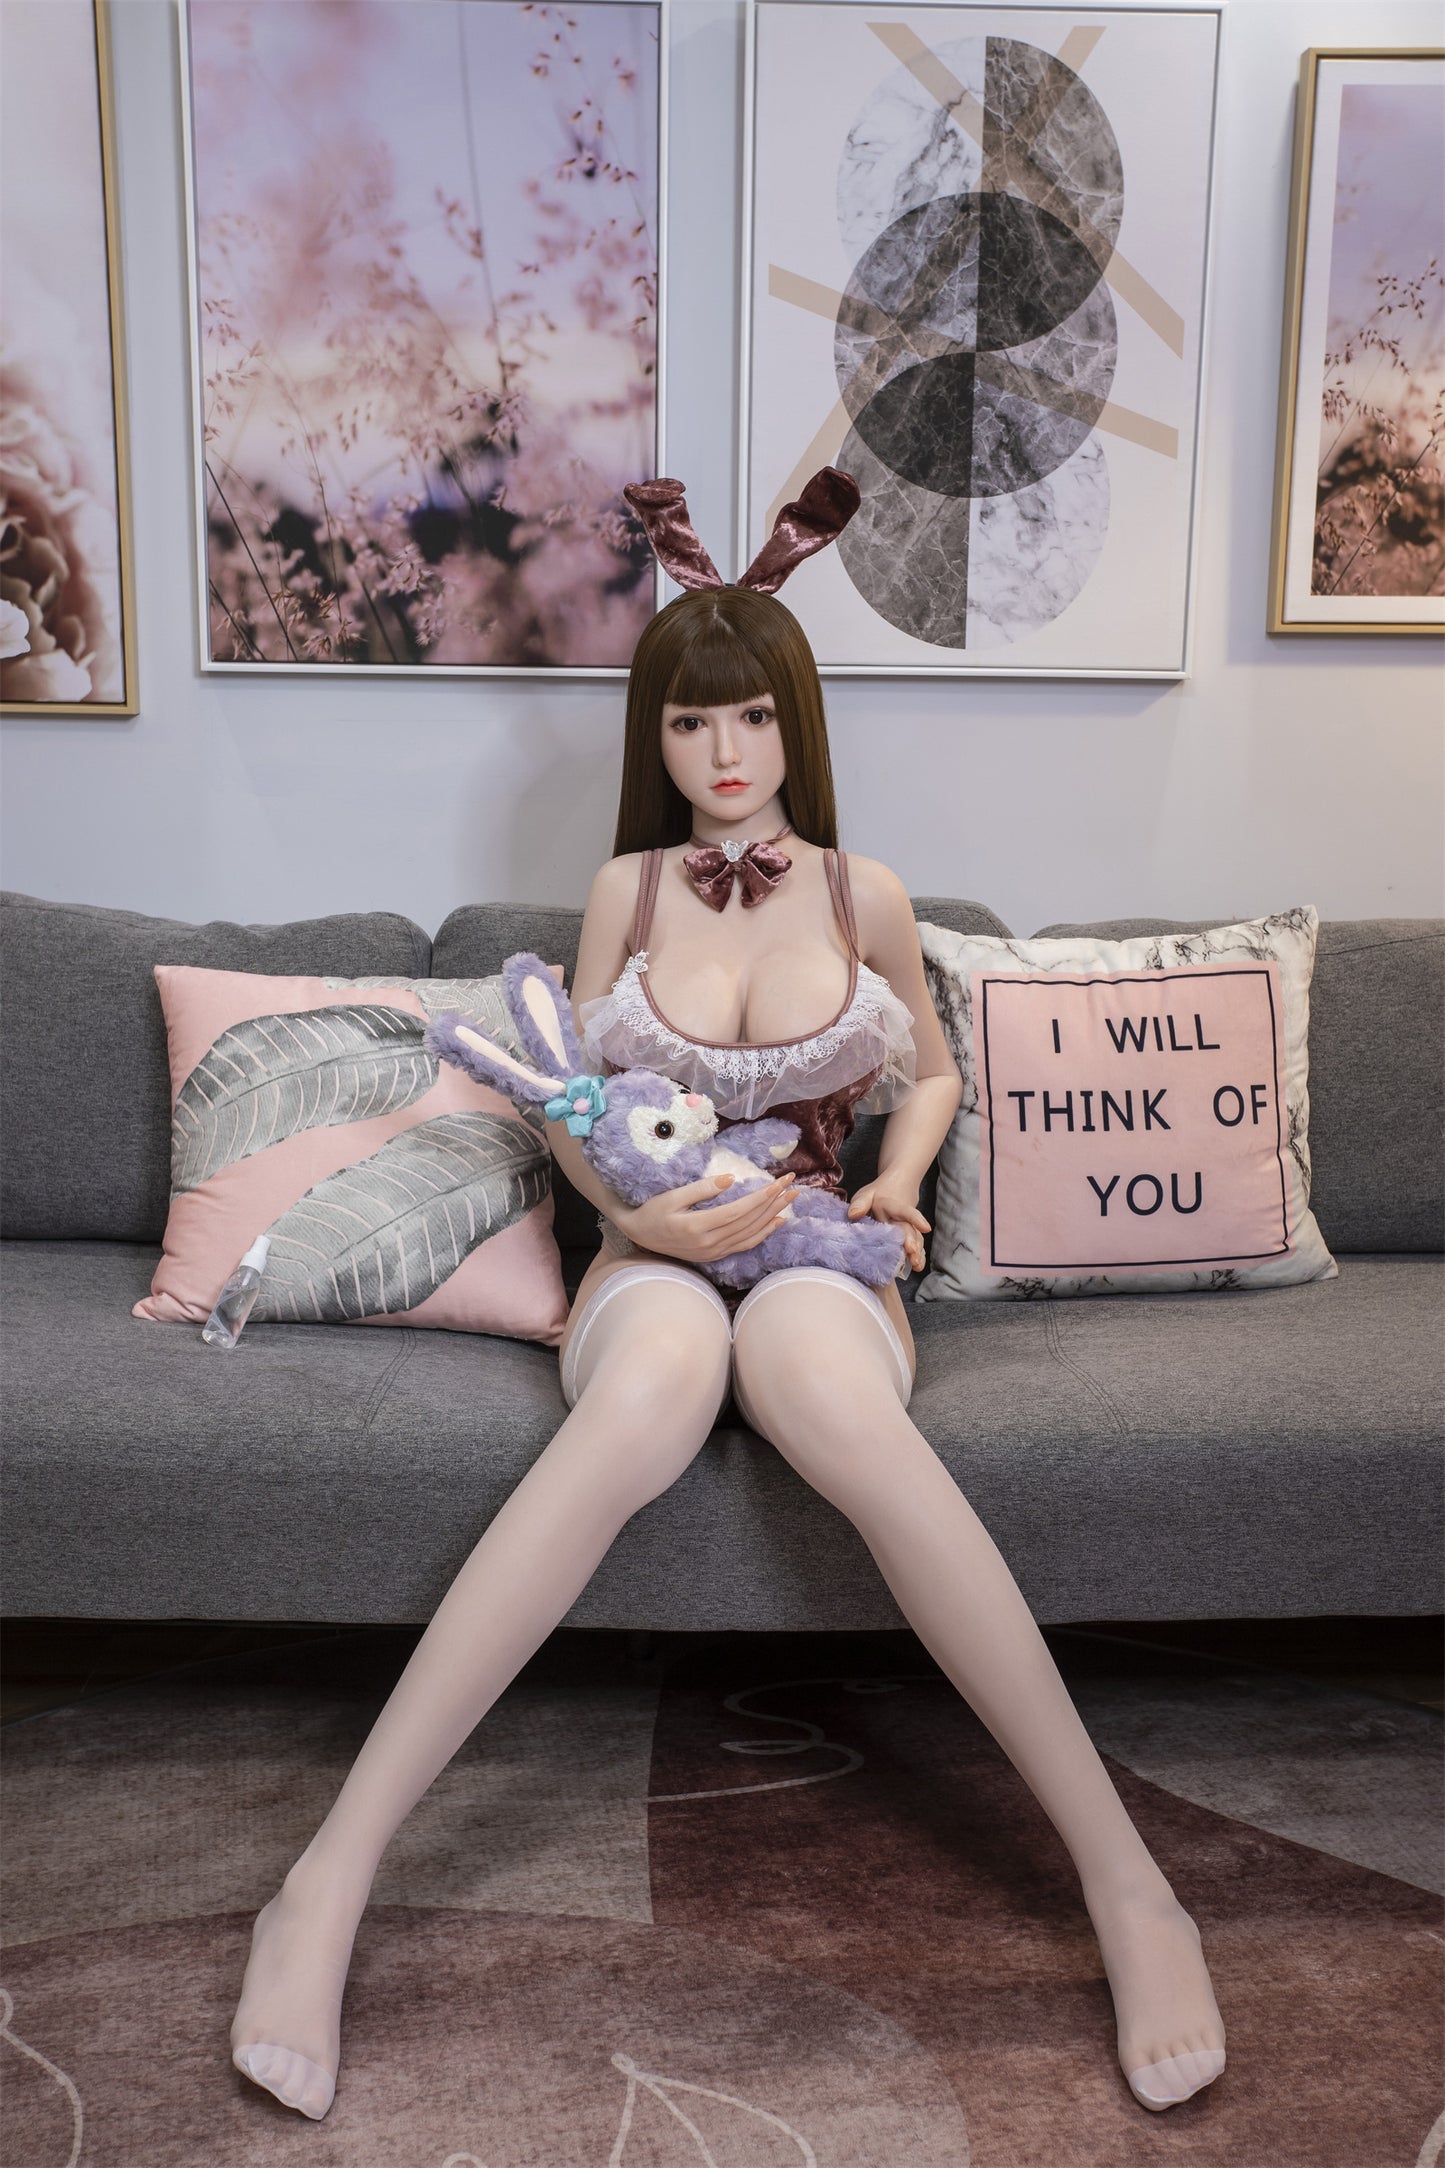 Asami Full Body Japanese Girl Sex Dolls for Men -AU Warehouse